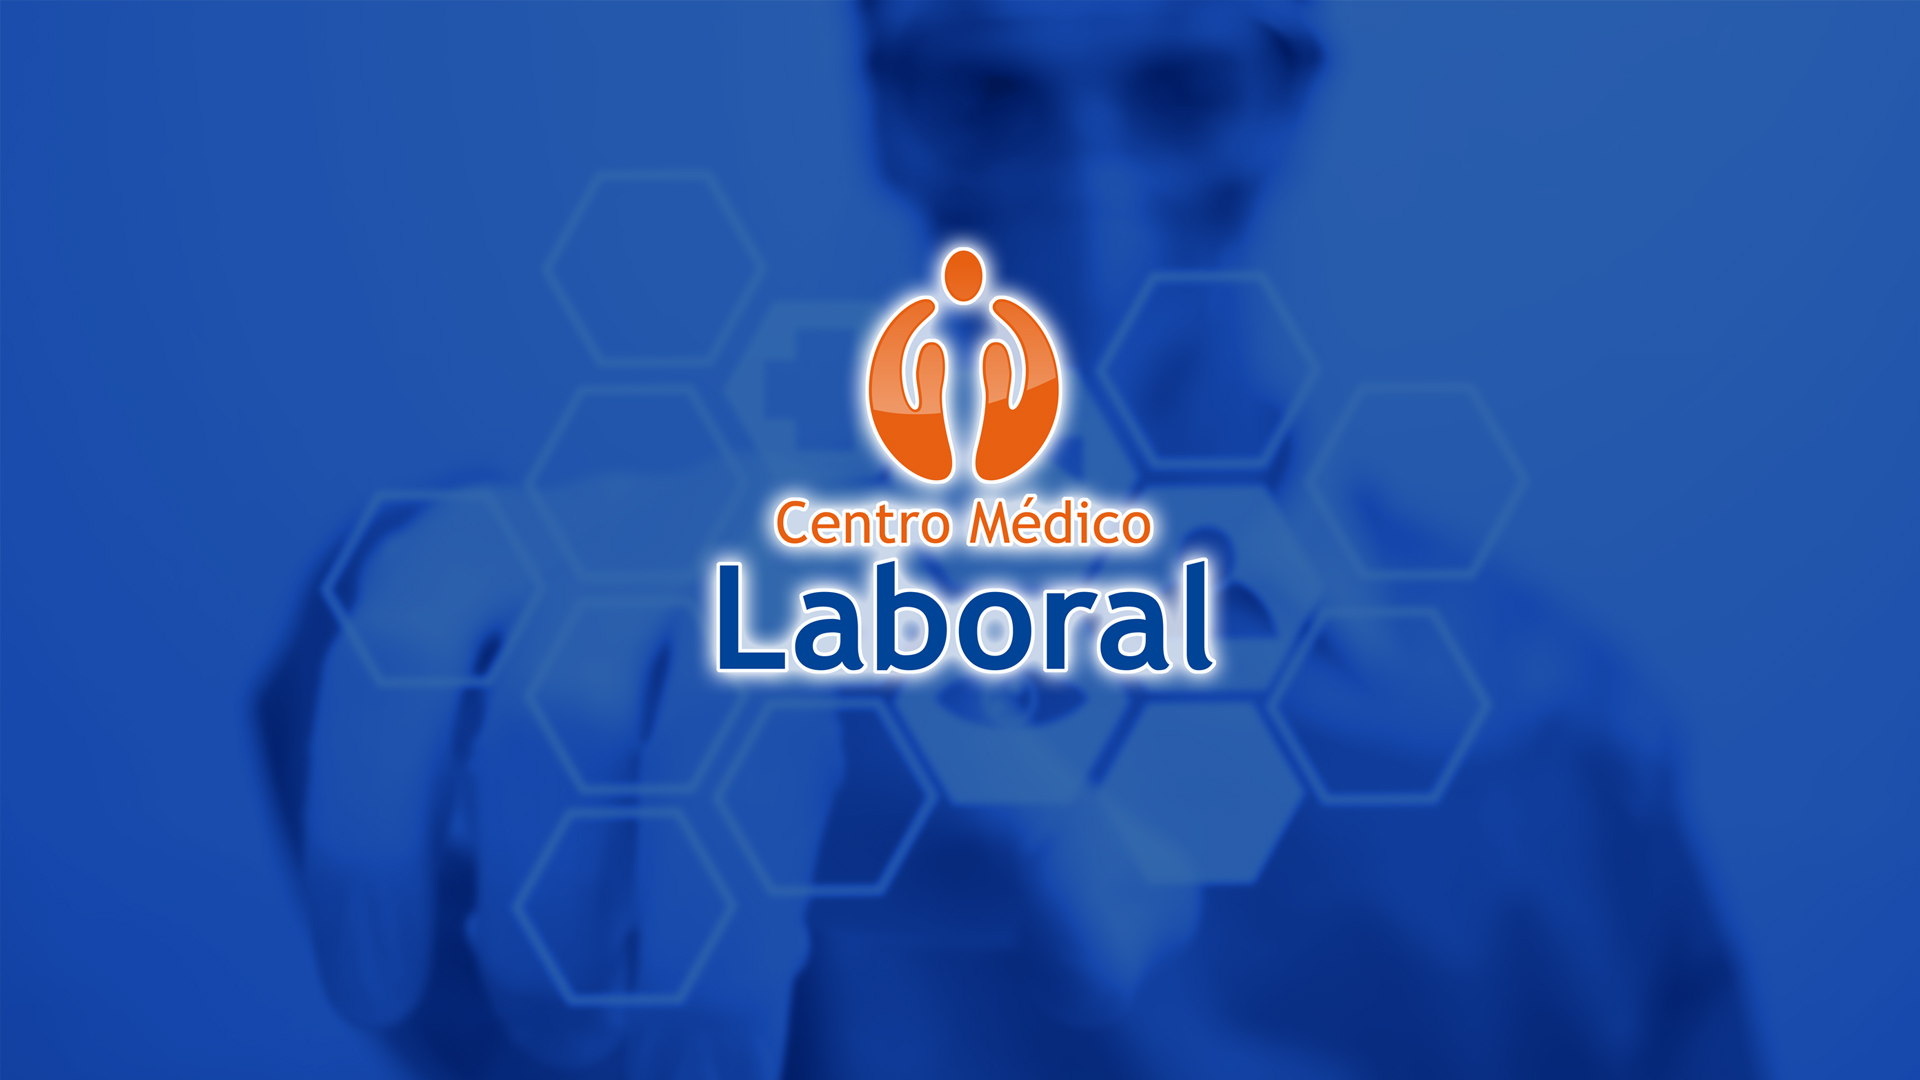 Centro Medico Laboral Servicios Integrales De Salud Ocupacional 8455